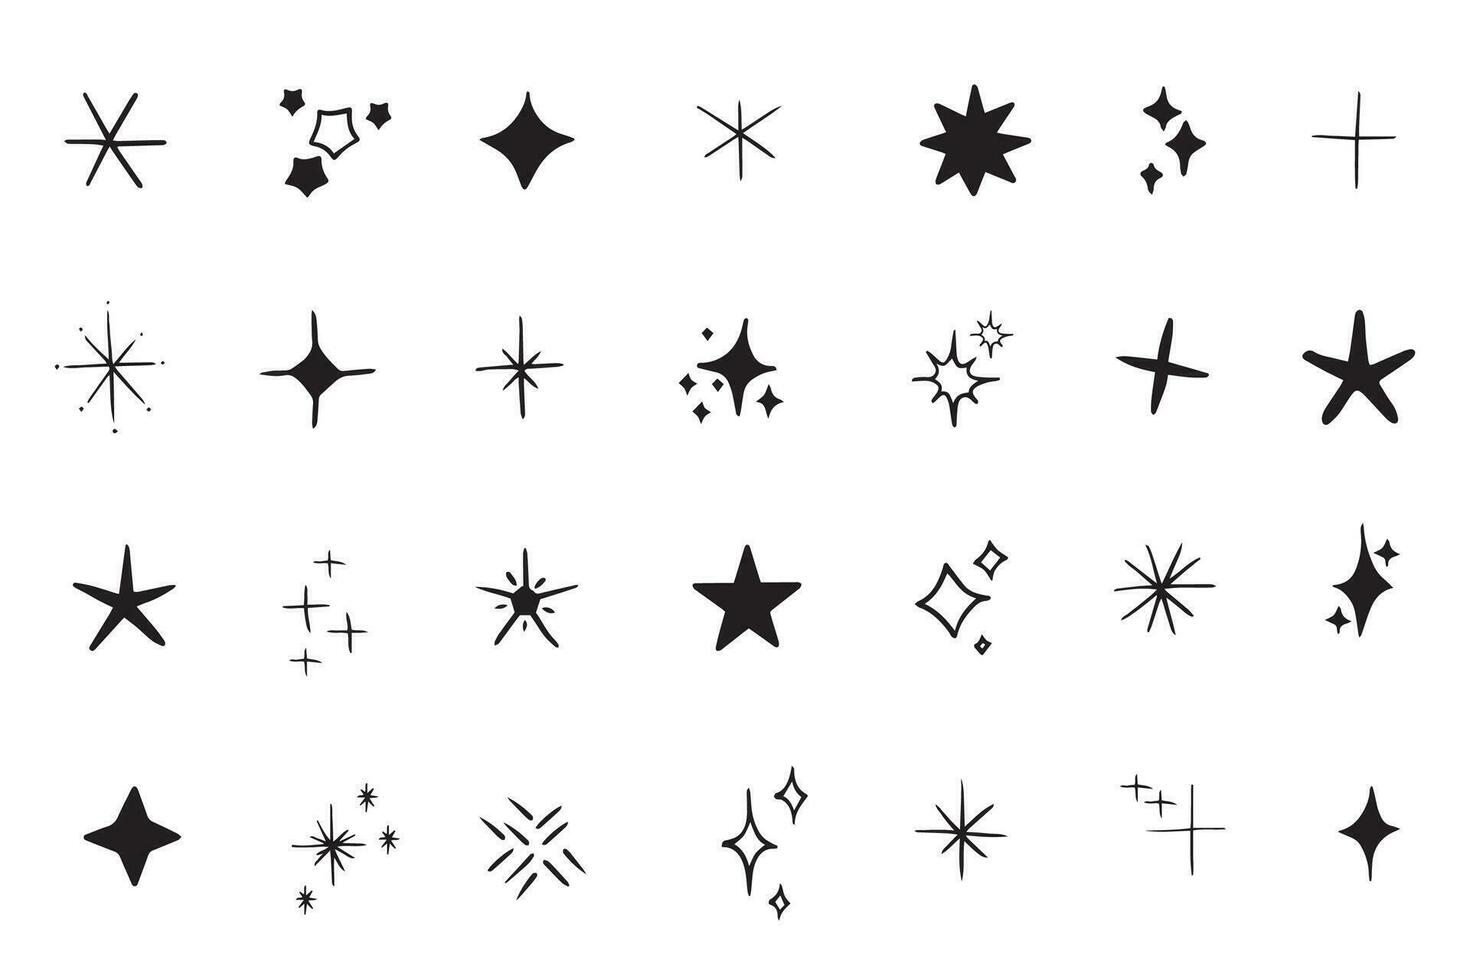 Vektor einstellen von y2k Sterne, Starburst und retro futuristisch Grafik Ornamente zum Dekoration. einstellen von Star Formen. Vorlagen zum Design, Poster, Projekte, Banner, Logo, und Geschäft Karten. Vektor